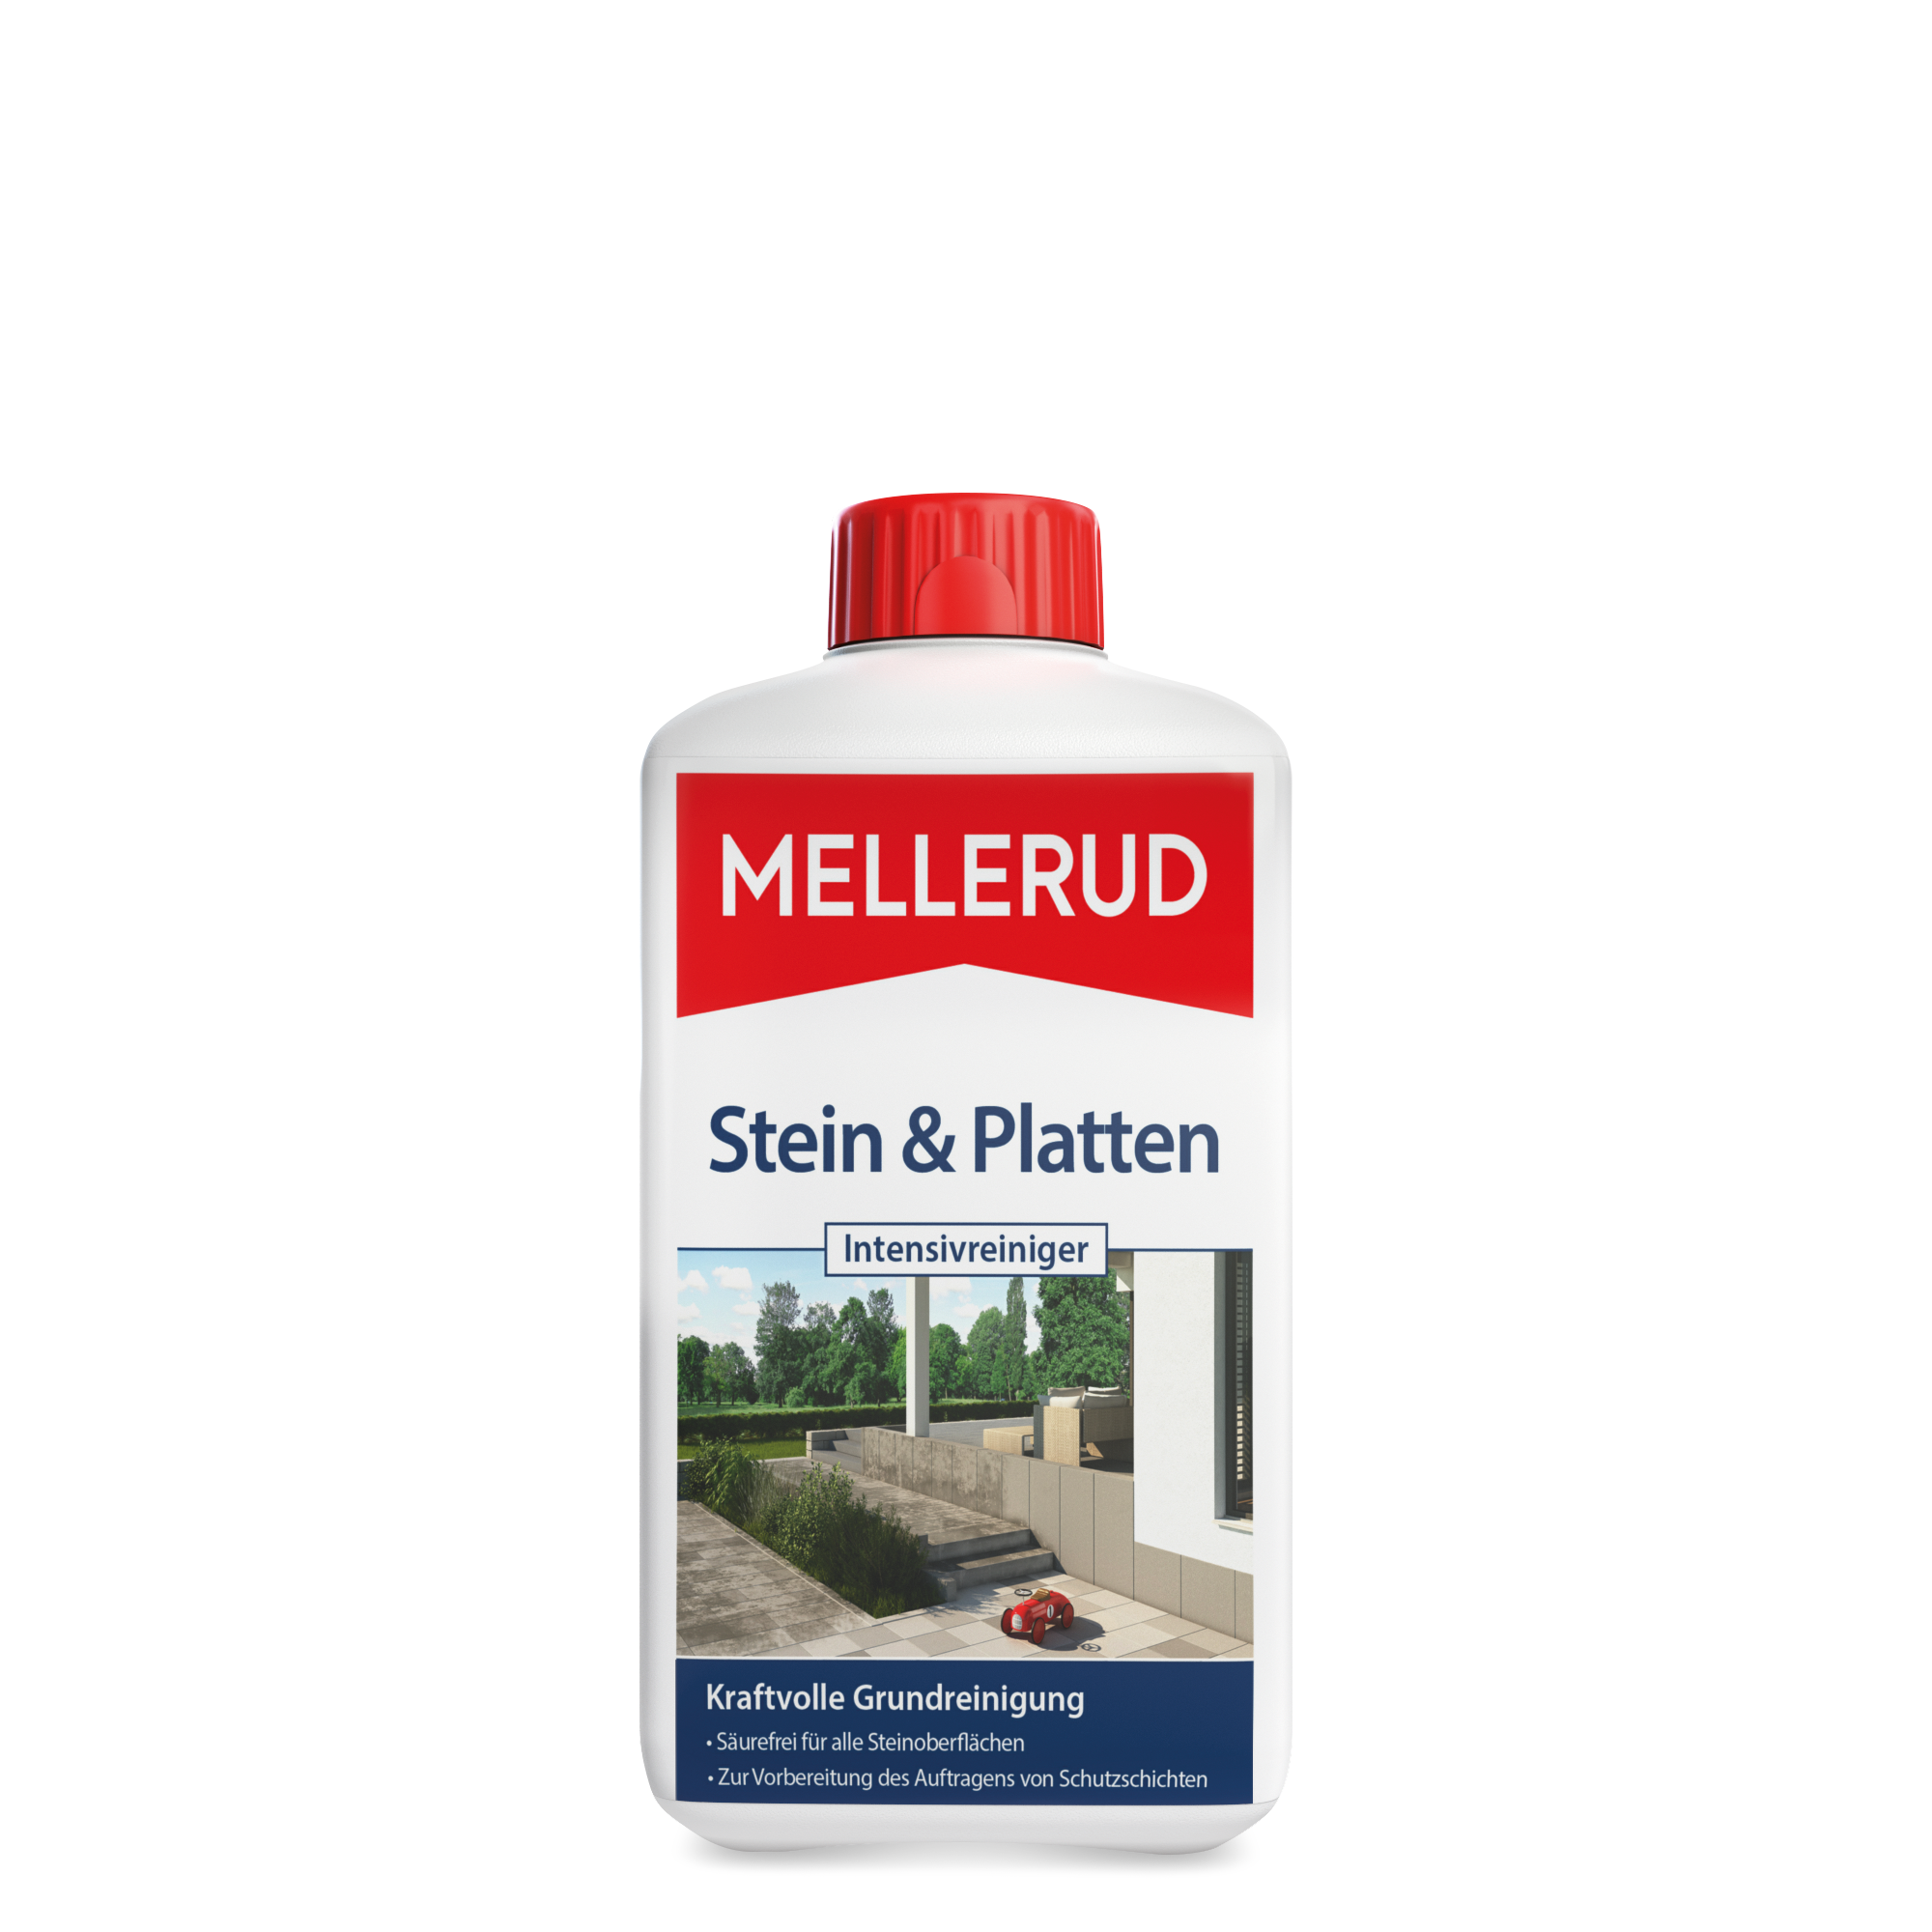 Stein & Platten Intensivreiniger 1,0 l + product picture